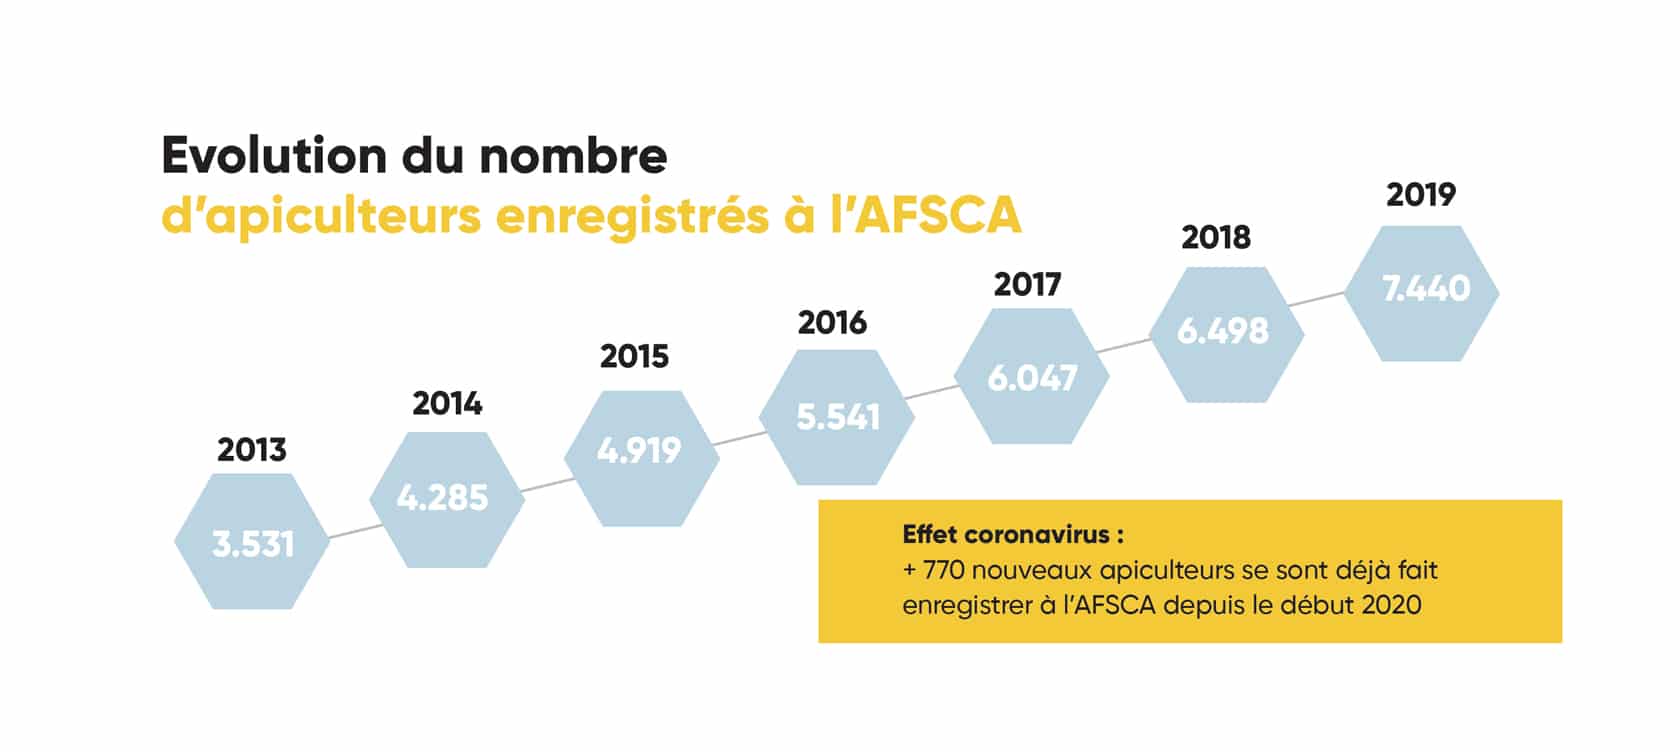 Evolution du nombre d'apiculteurs enregistrés à l'AFSCA